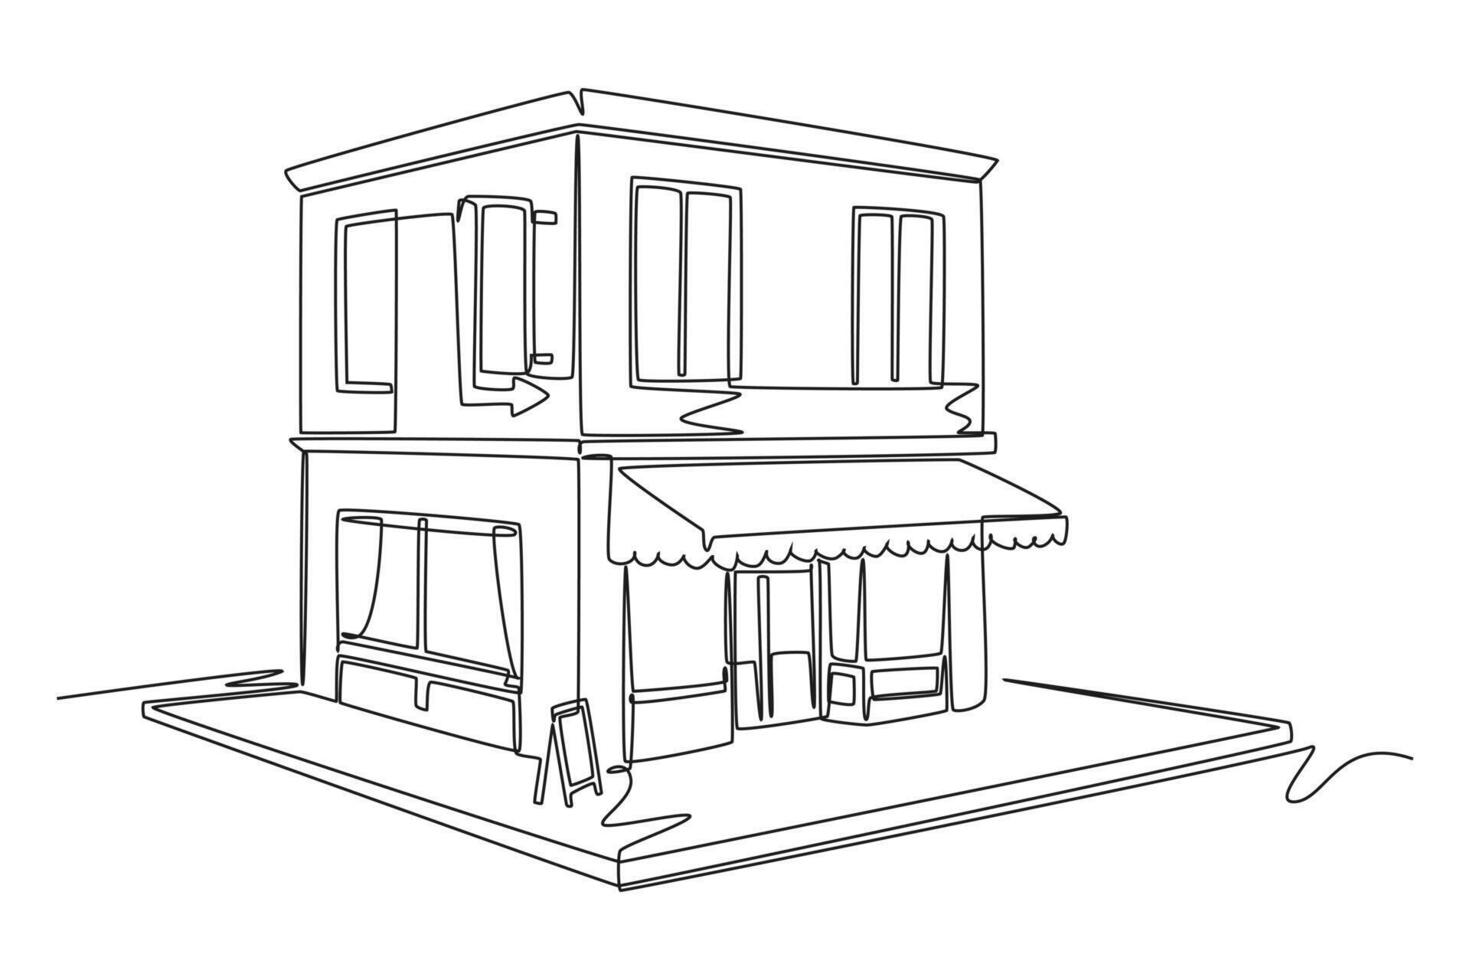 uno continuo línea dibujo de linda casa o pequeño edificio concepto garabatear ilustración vector